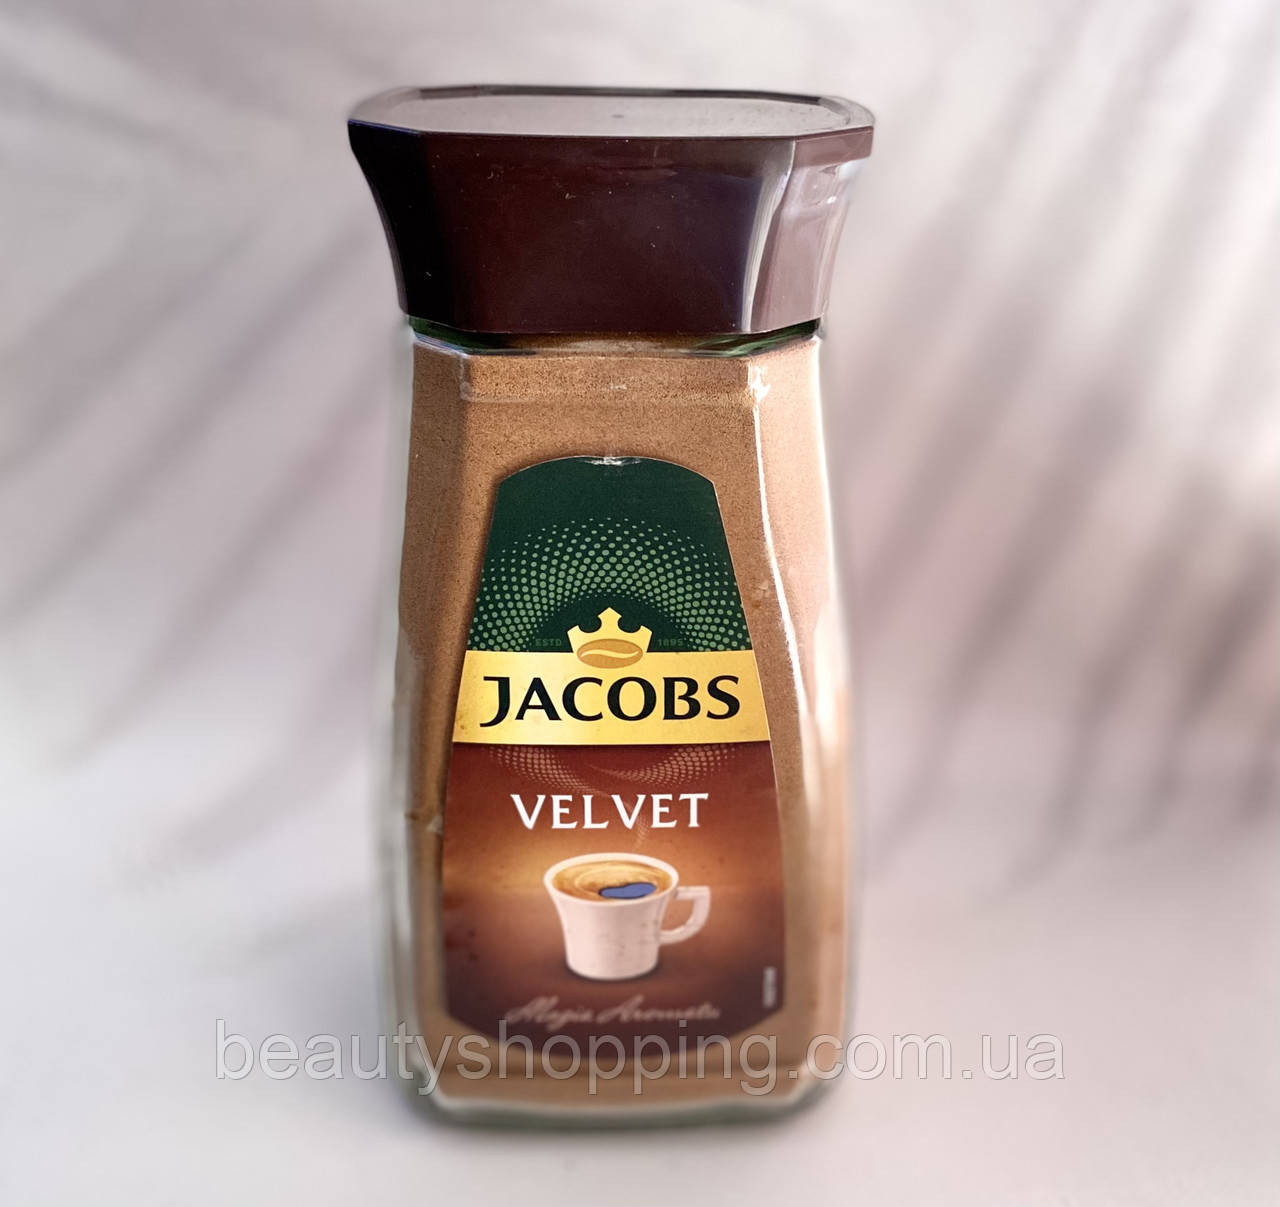 Jacobs Velvet  Розчинна кава 200g